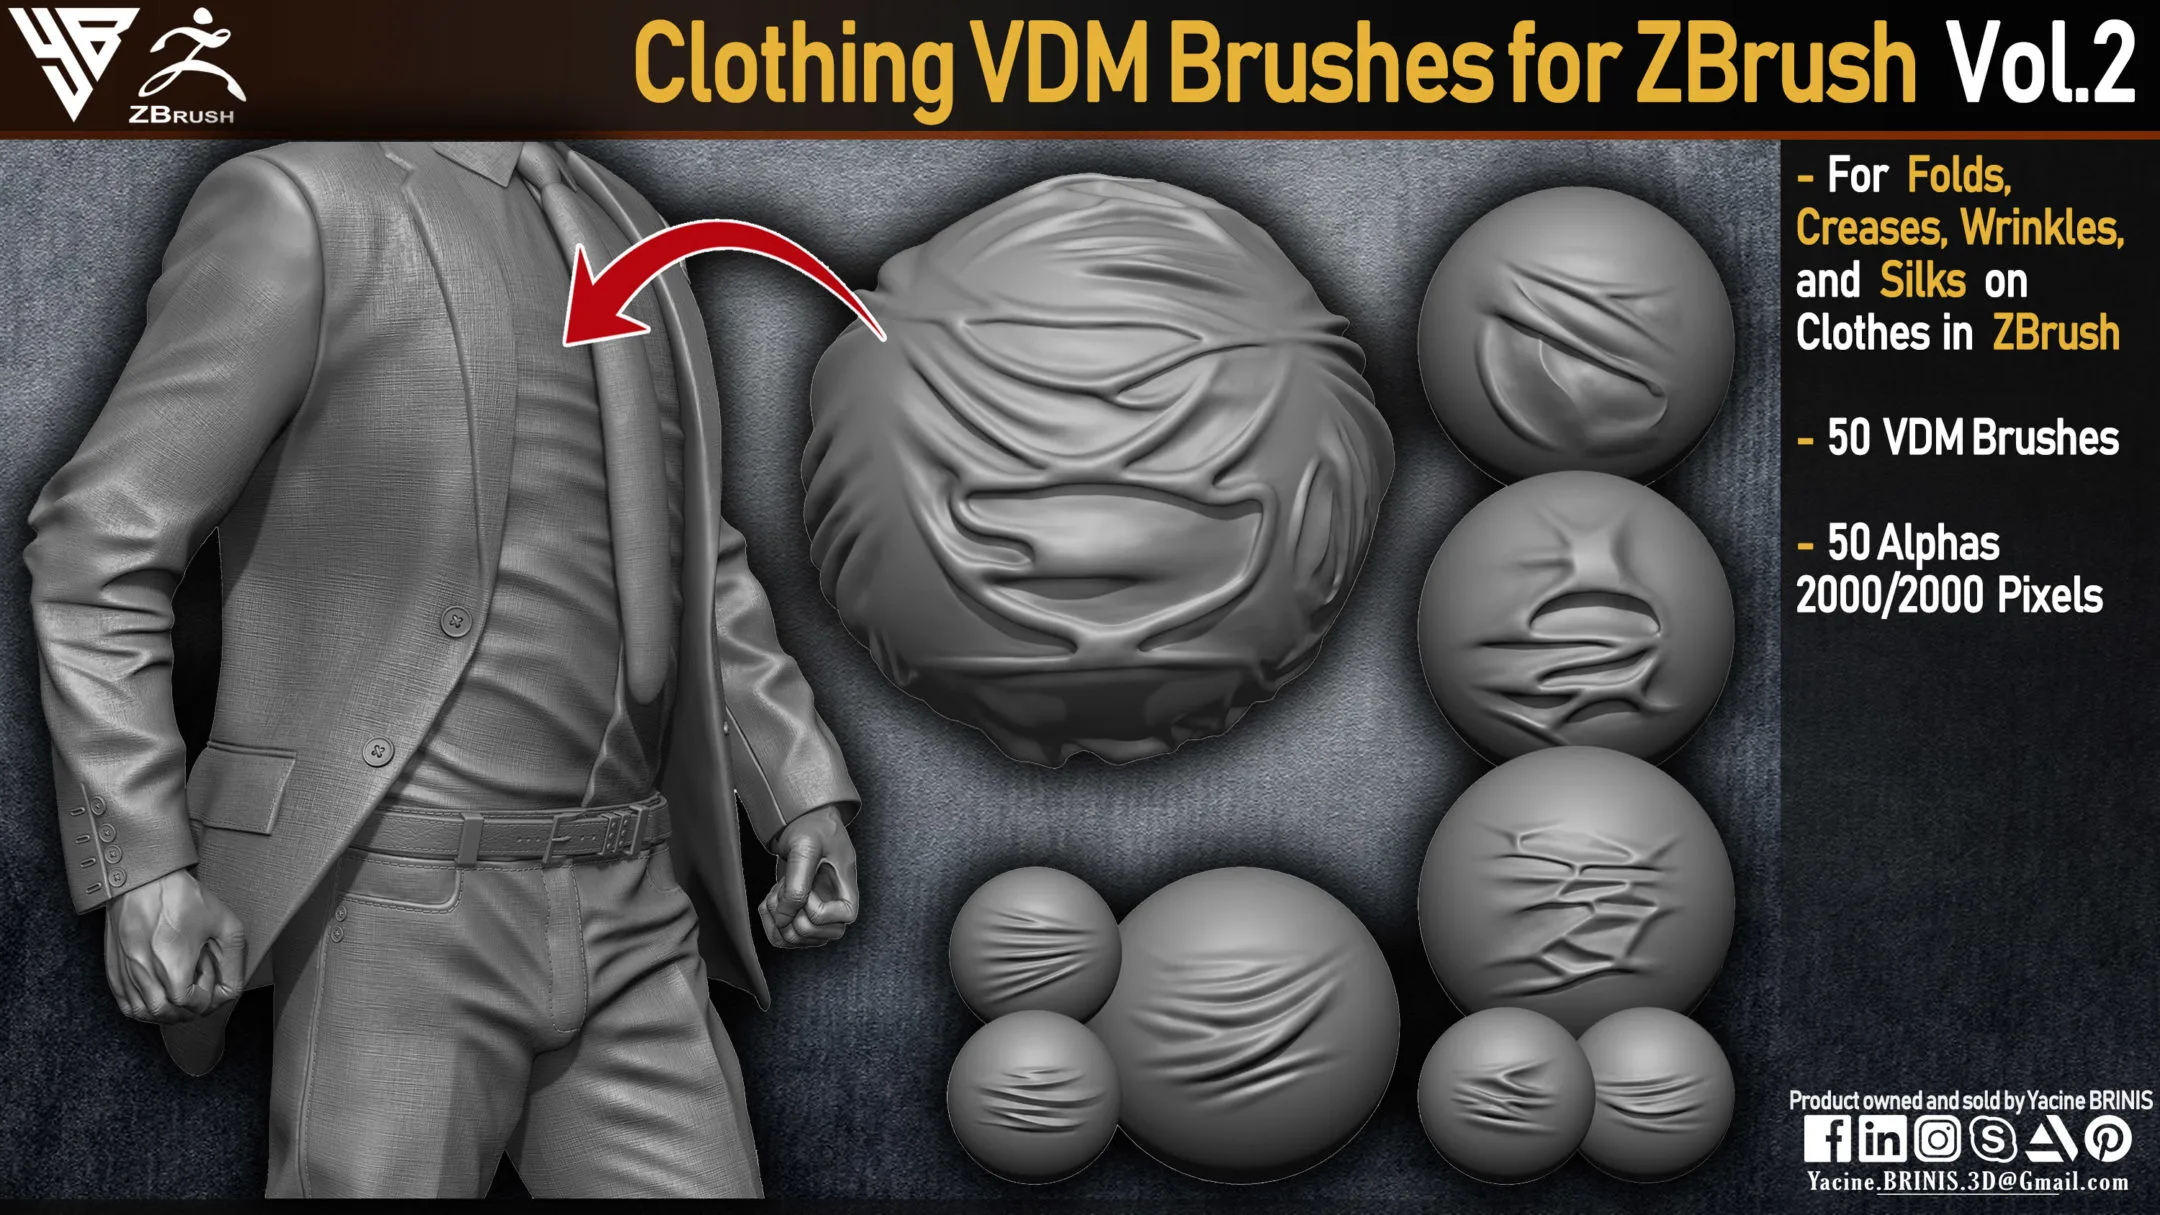 50 VDM Clothing Brushes for ZBrush (Creases, Folds, Wrinkles, Silks) + 50 Alphas. Vol 2